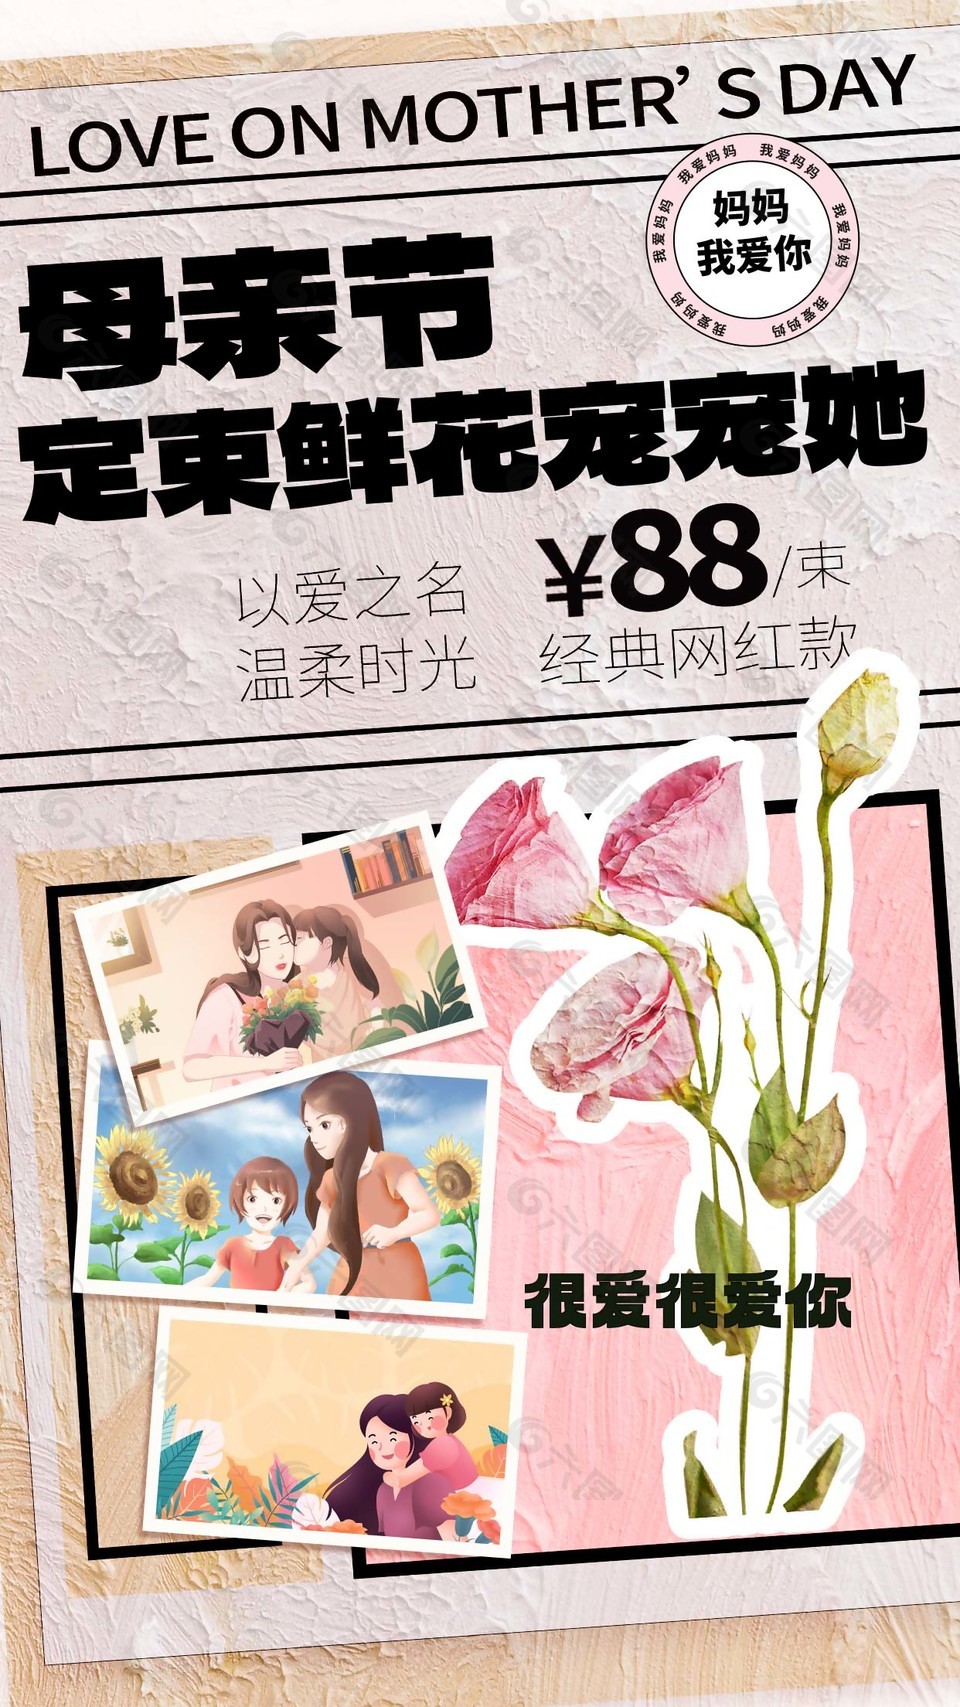 母亲节鲜花店活动宣传海报设计